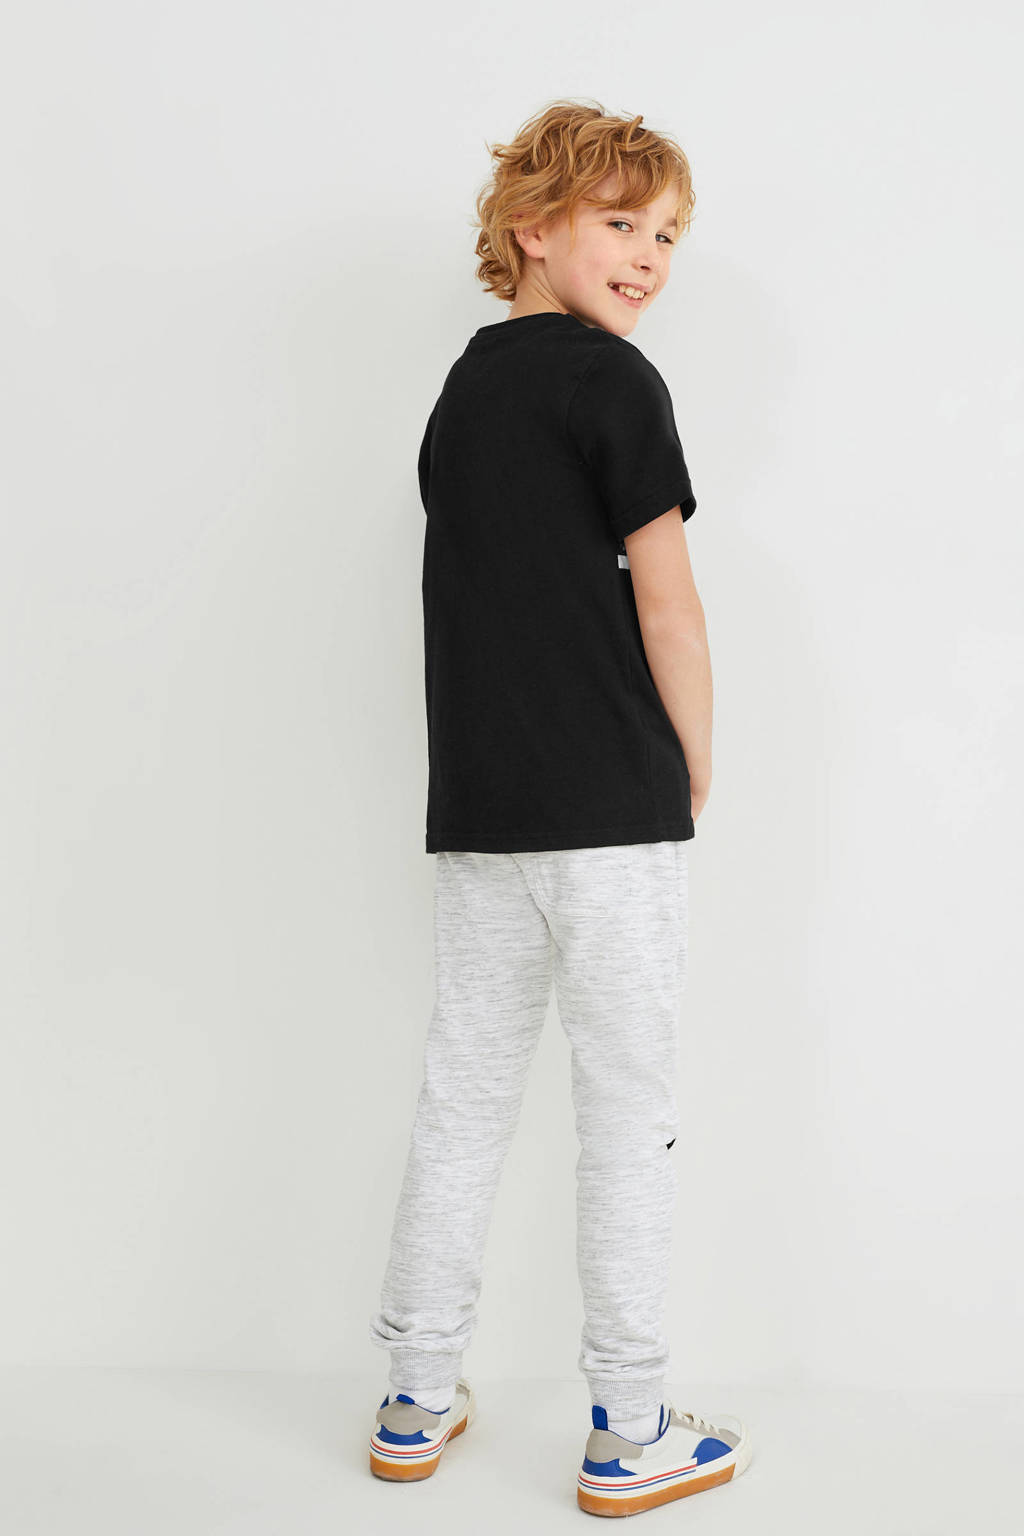 Zwart en grijze jongens C&A t-shirt + joggingbroek melange van katoen met printopdruk, korte mouwen, ronde hals en elastische tailleband met koord